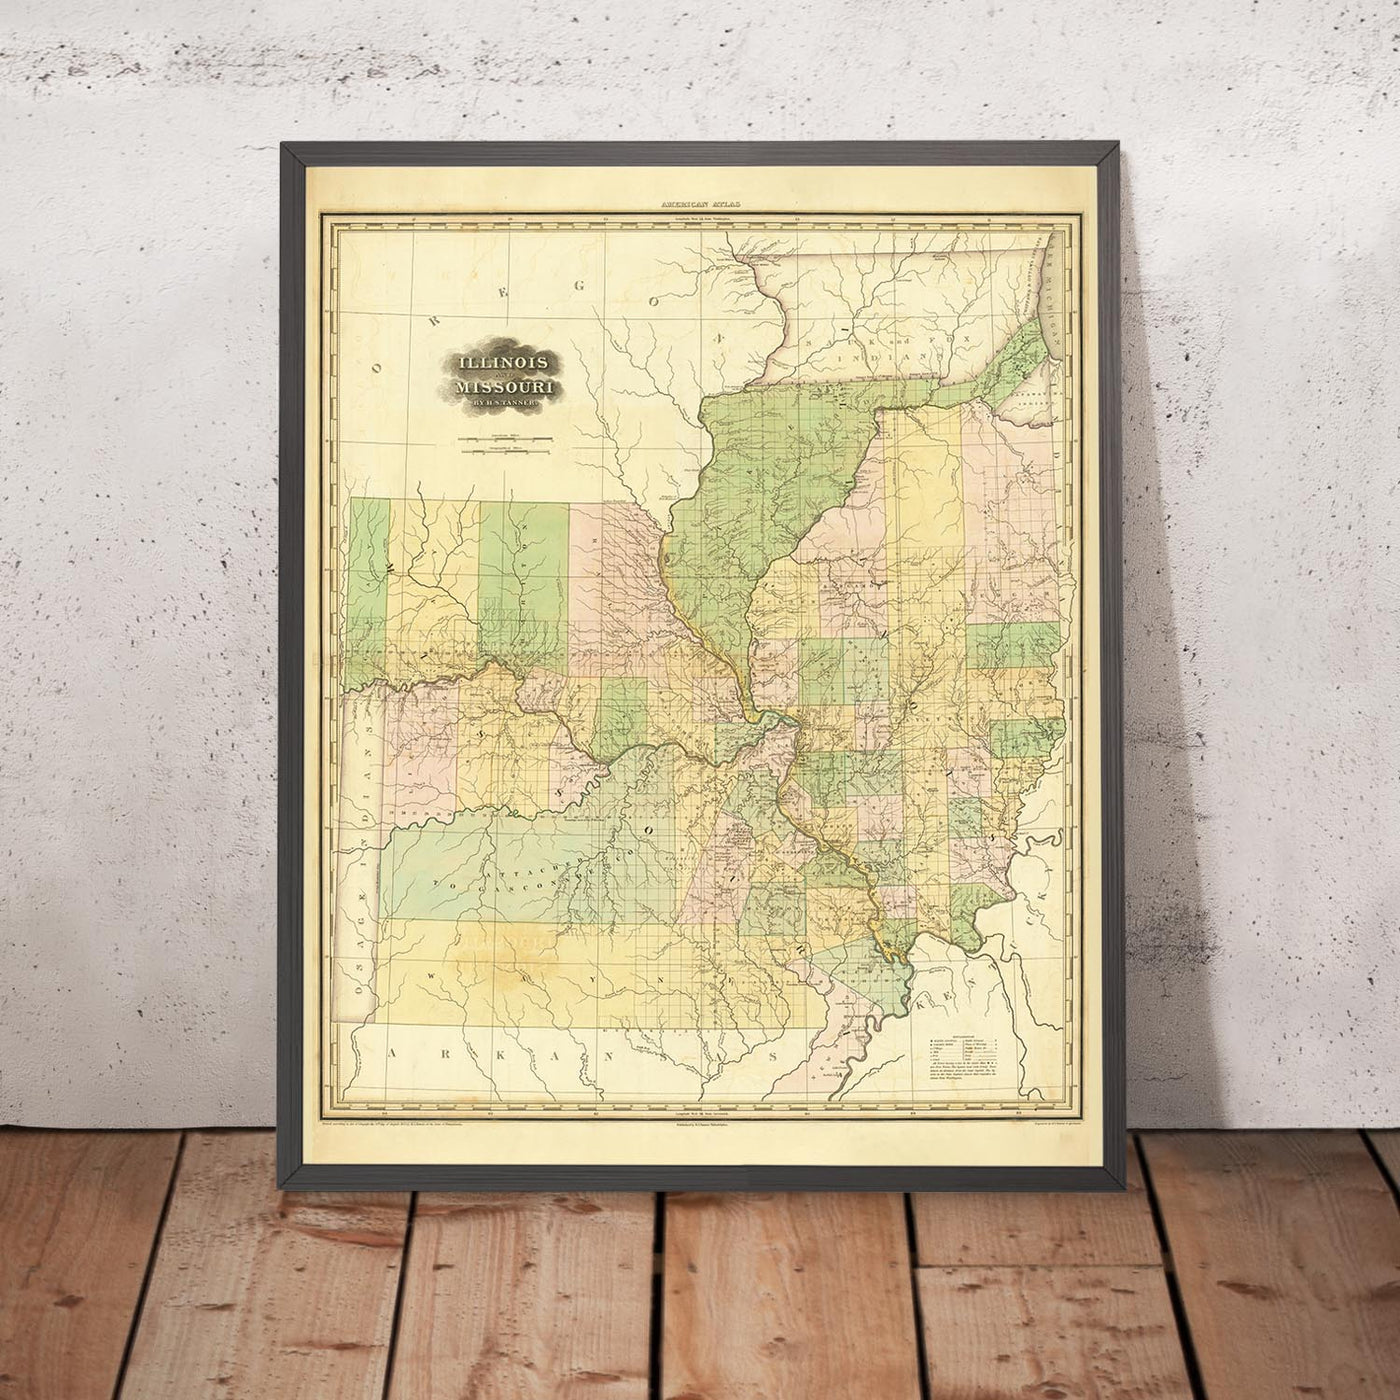 Alte Karte von Illinois und Missouri von H. S. Tanner, 1820: Chicago, Springfield, Peoria, Columbia, und St. Louis